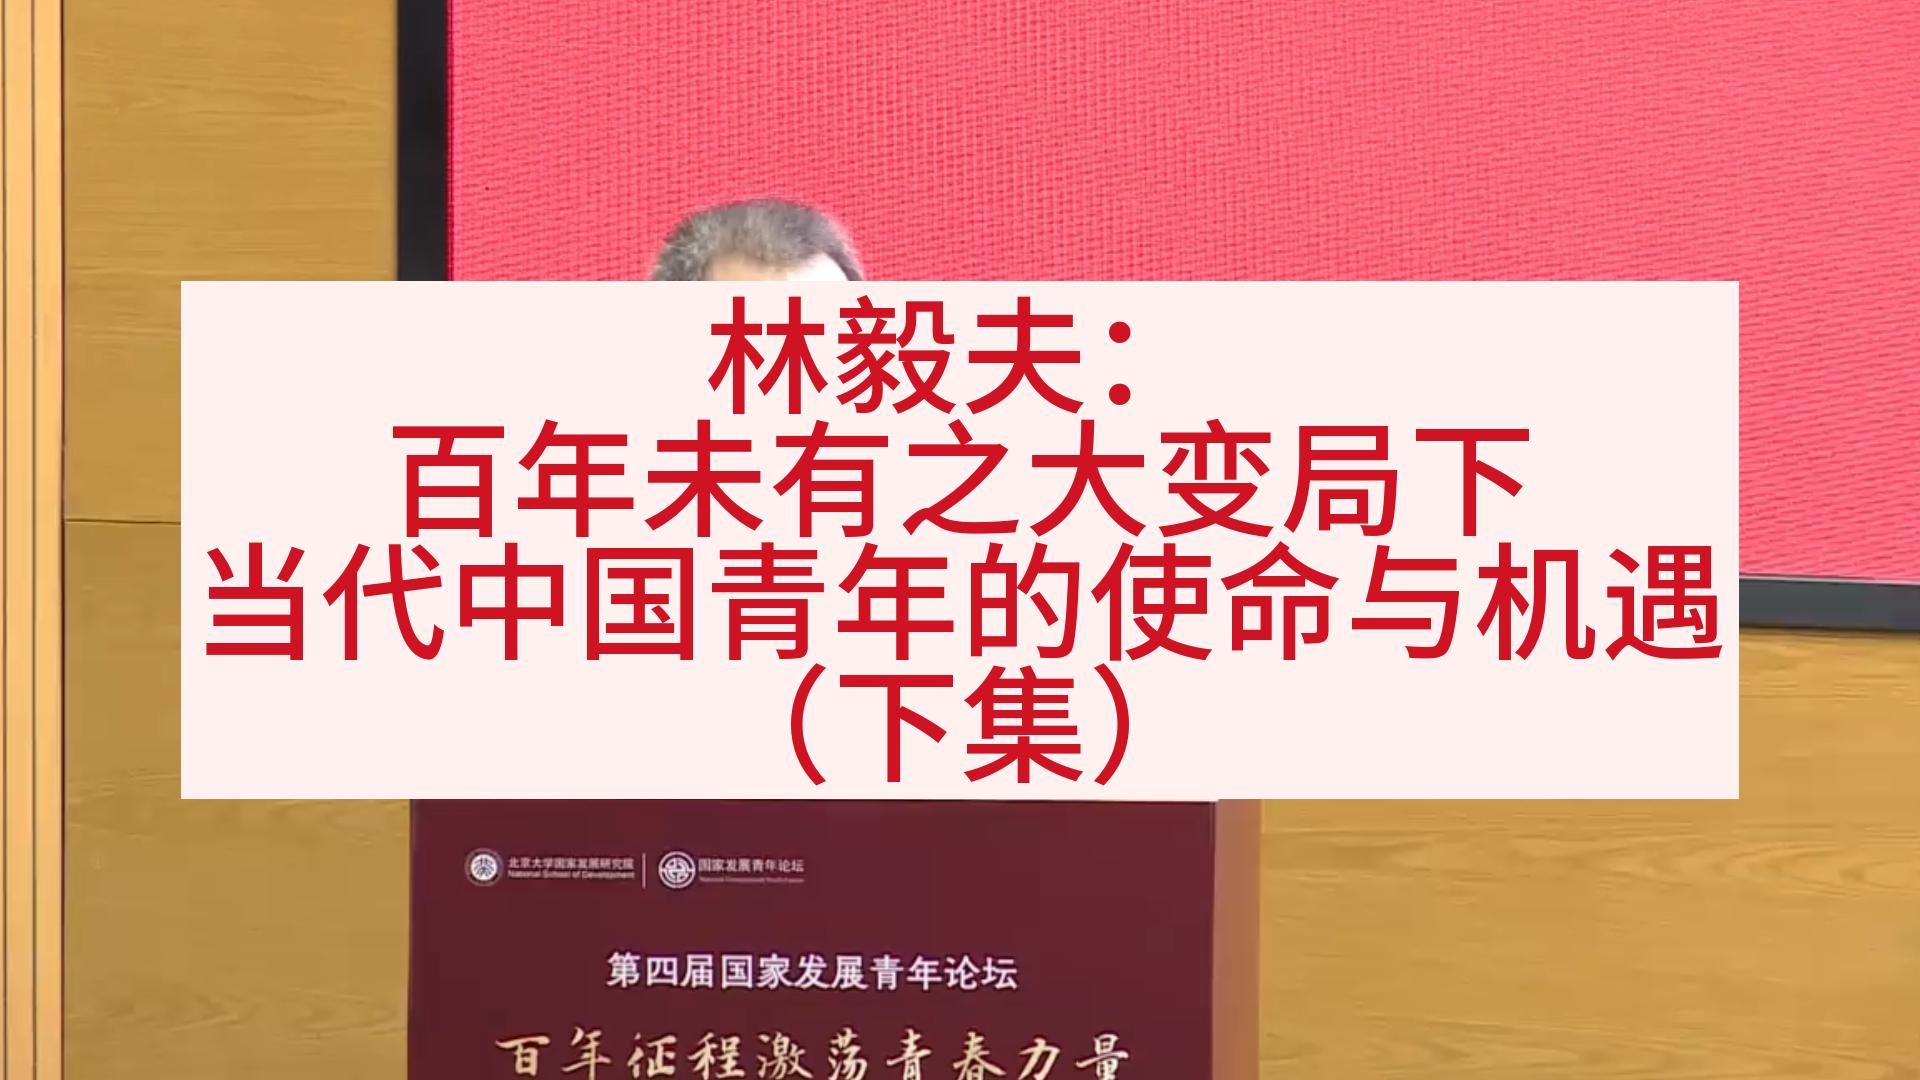 林毅夫：百年未有之大变局下 当代中国青年的使命与机遇（下）